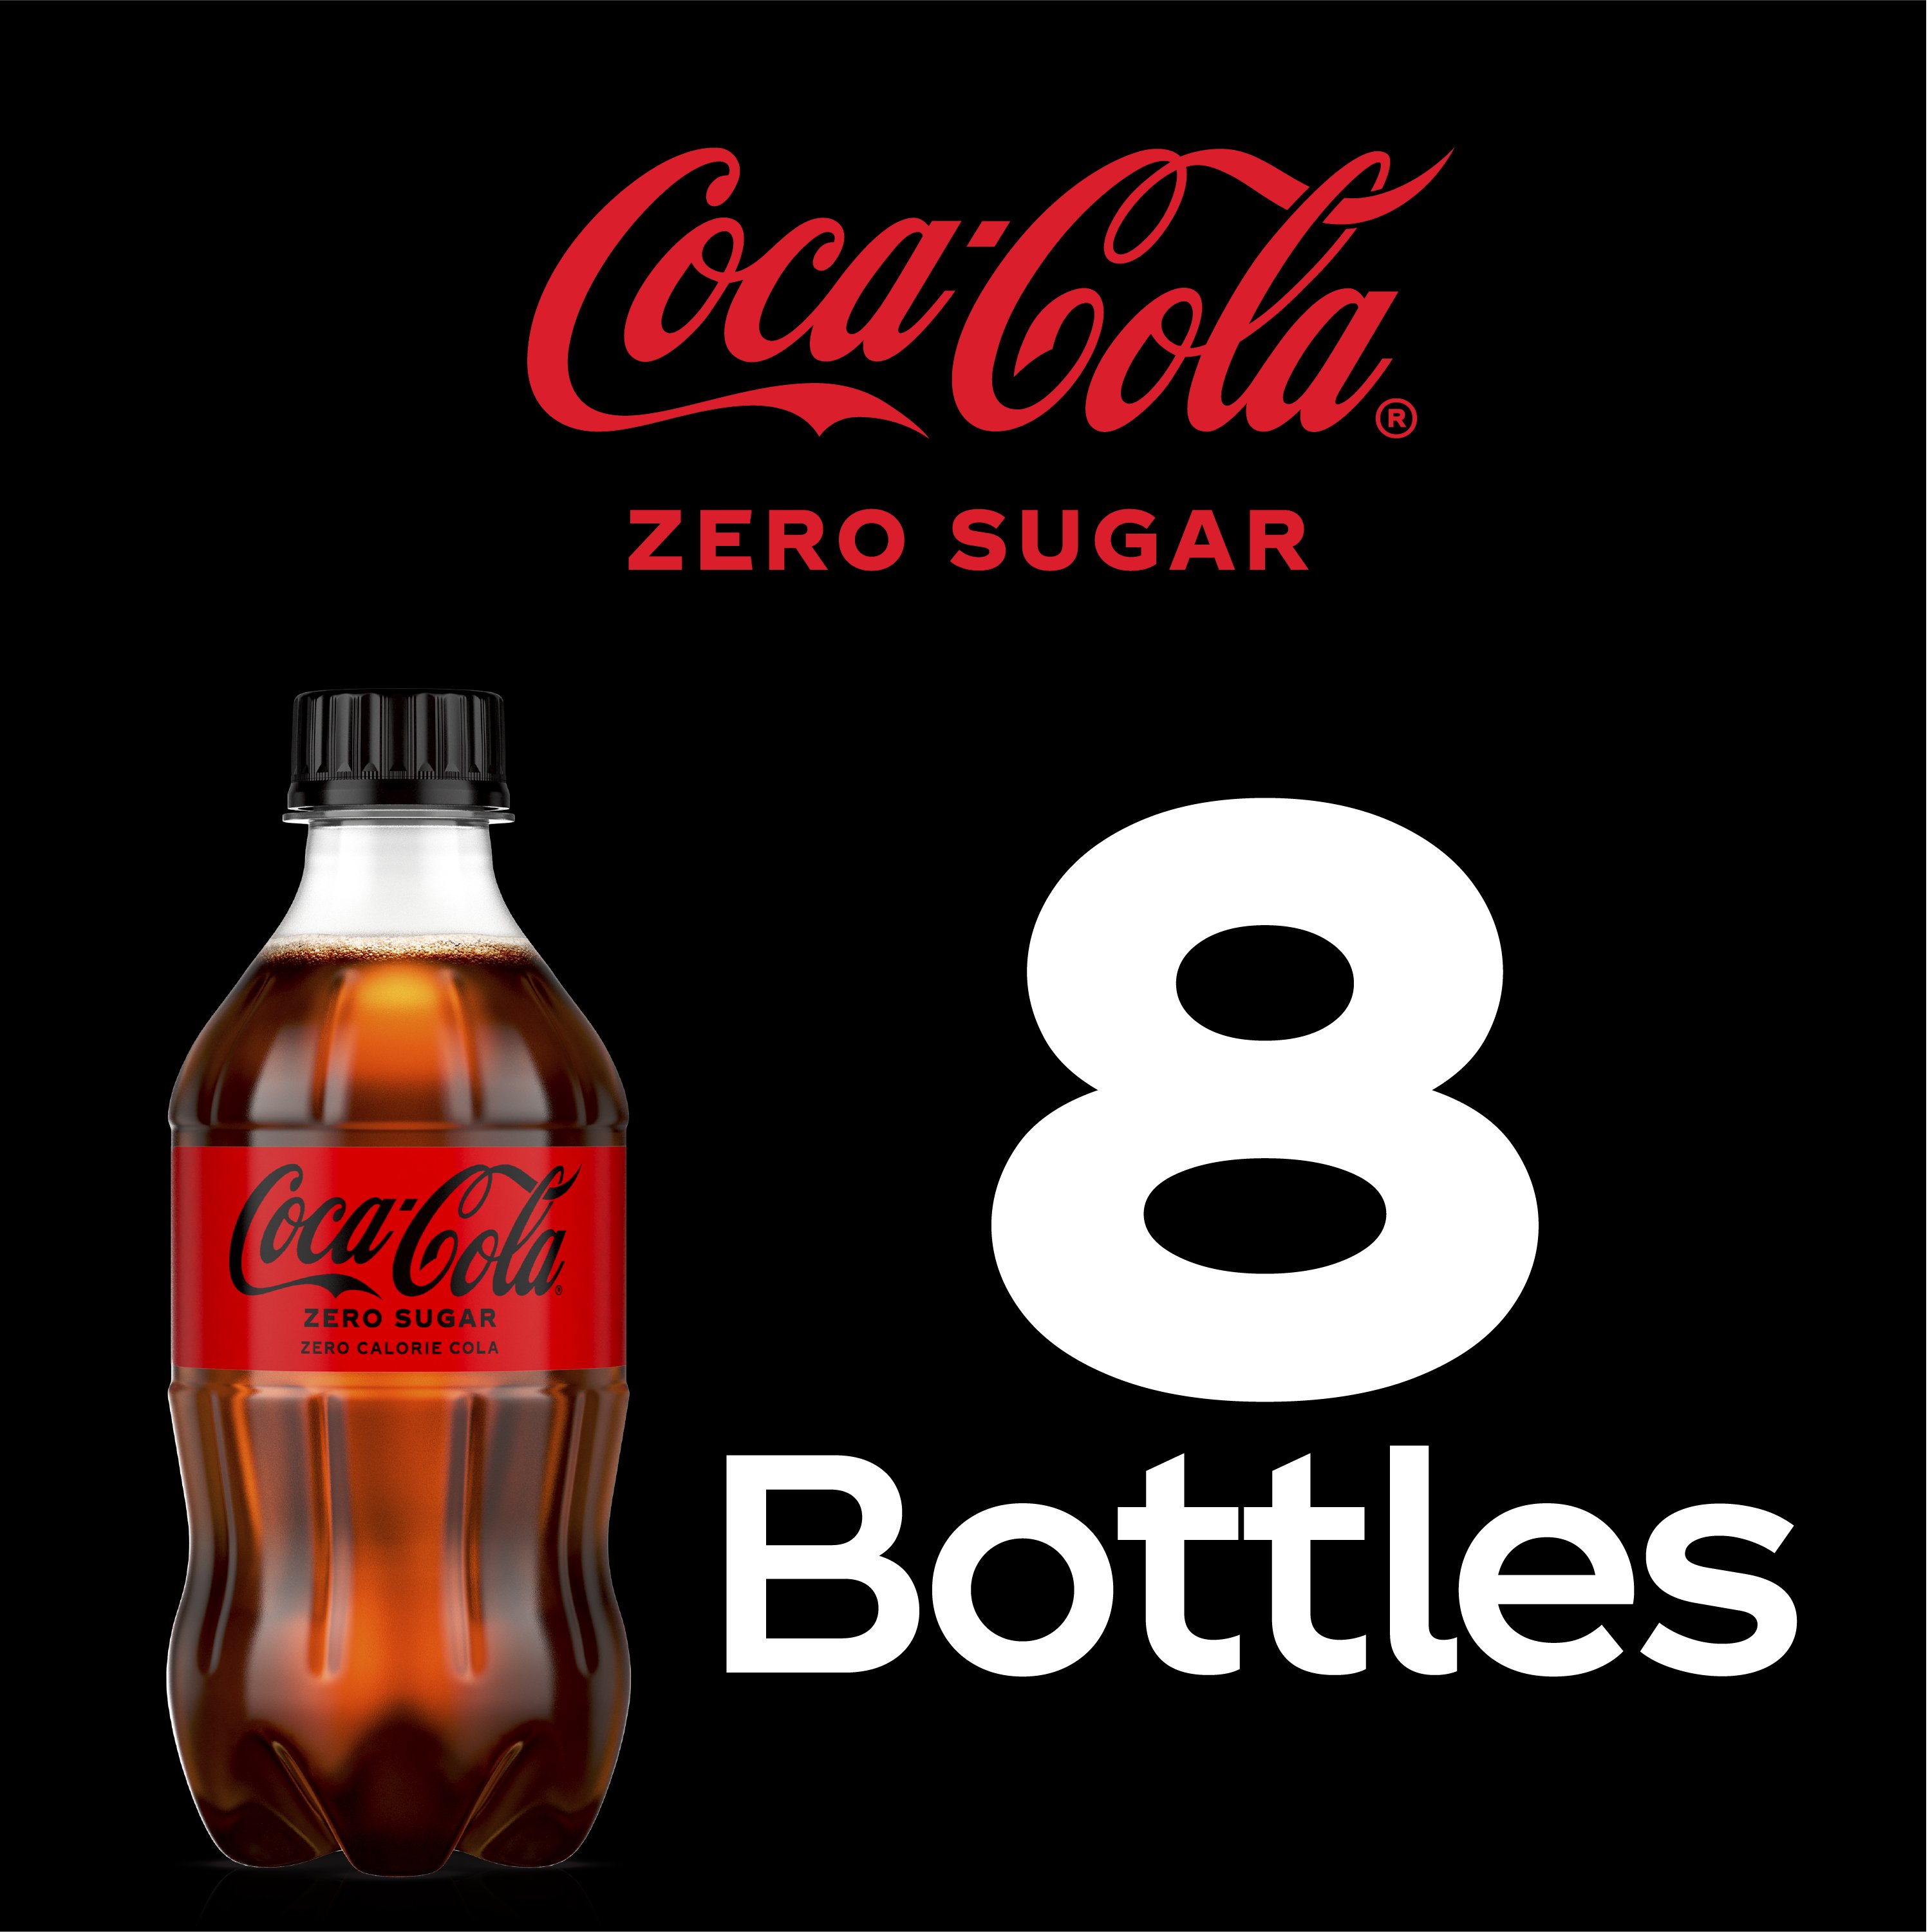 Coca-Cola Zero Sugar Coke 7.5 oz Cans - Shop Soda at H-E-B